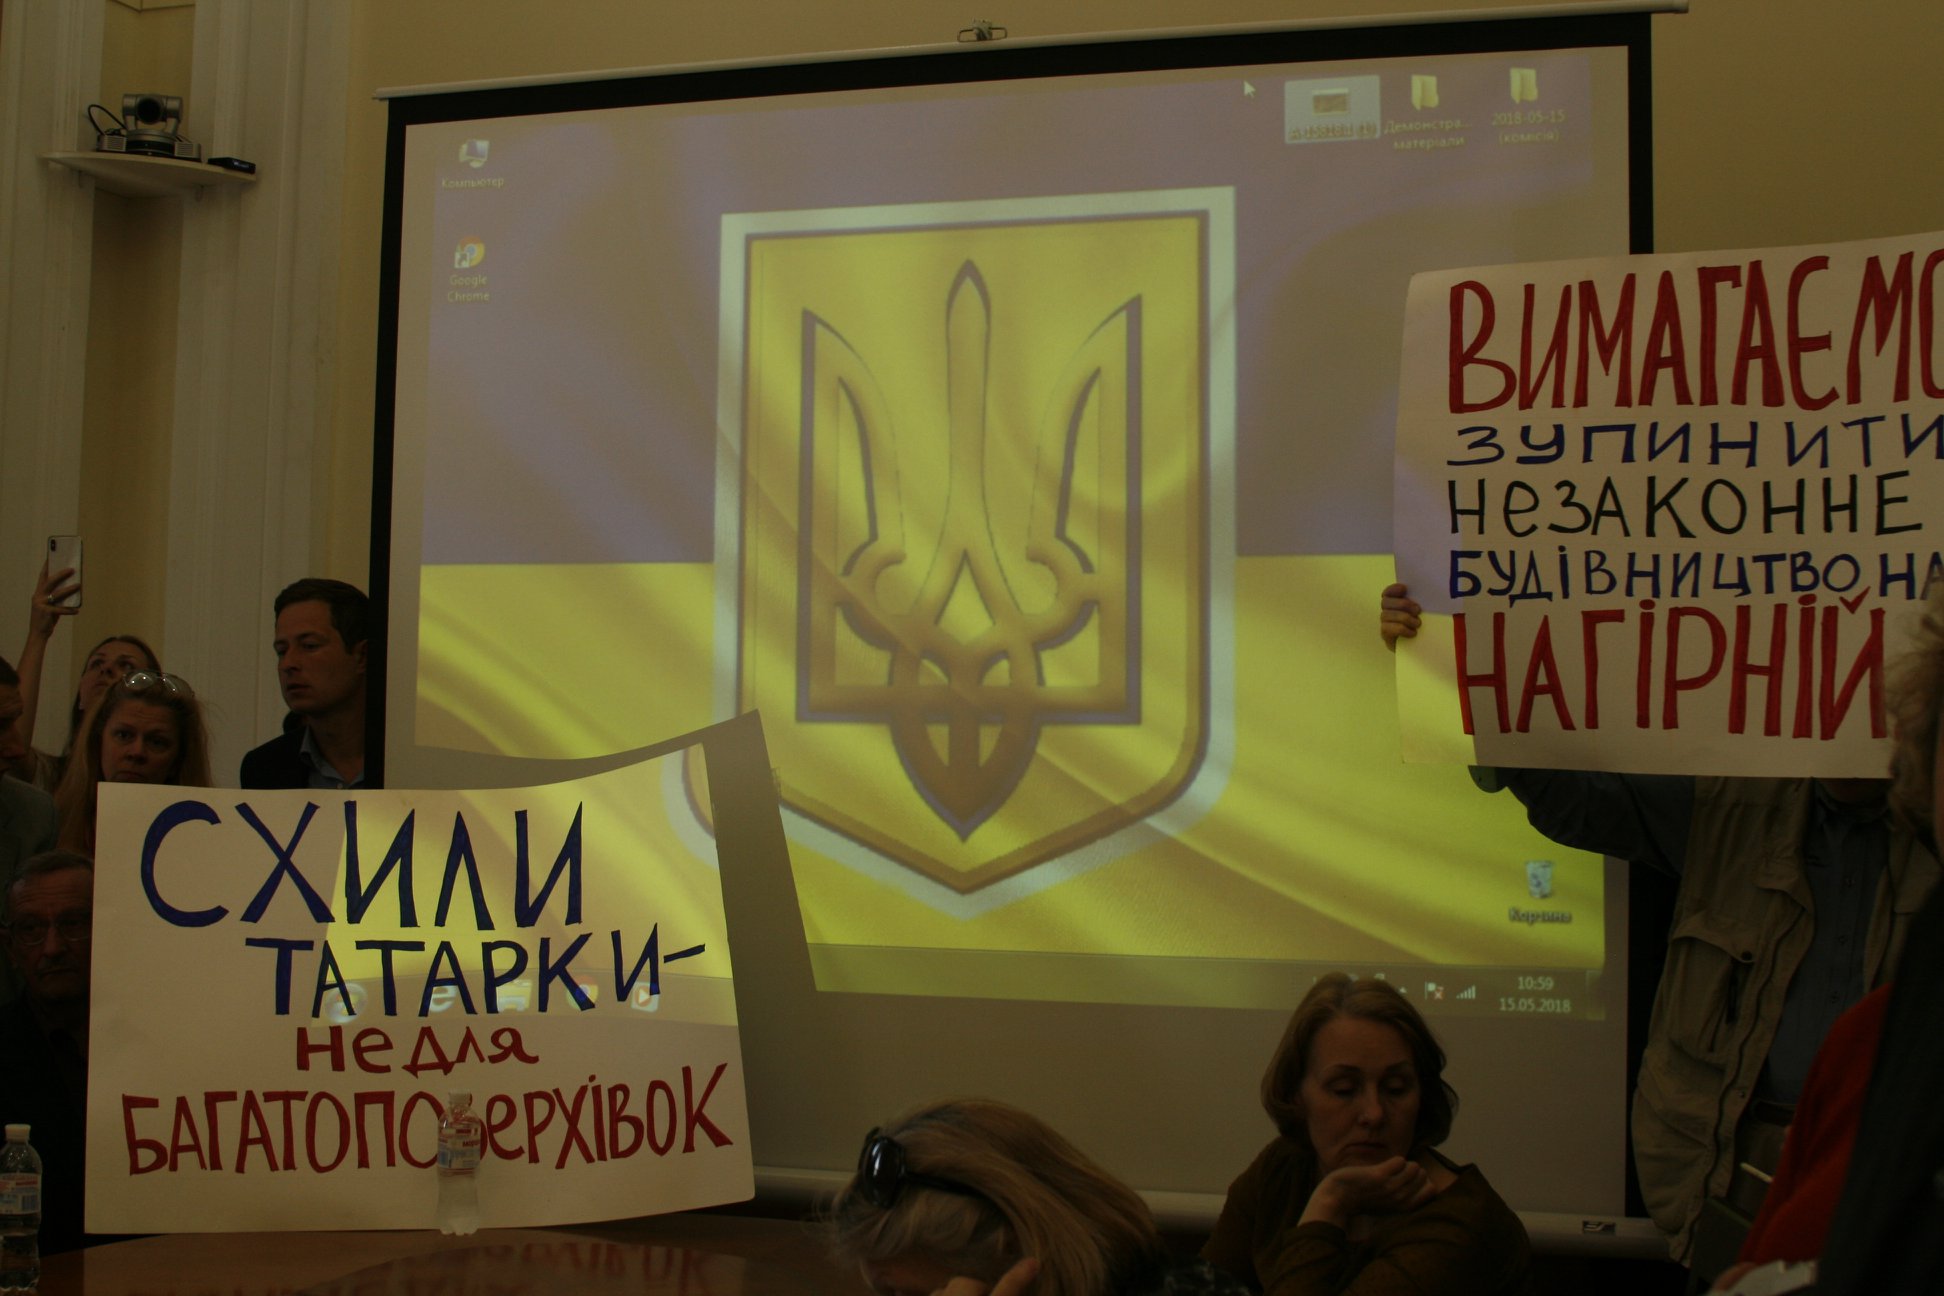 Представители “Солидарности” аккуратно пролоббировали незаконную застройку Татарки